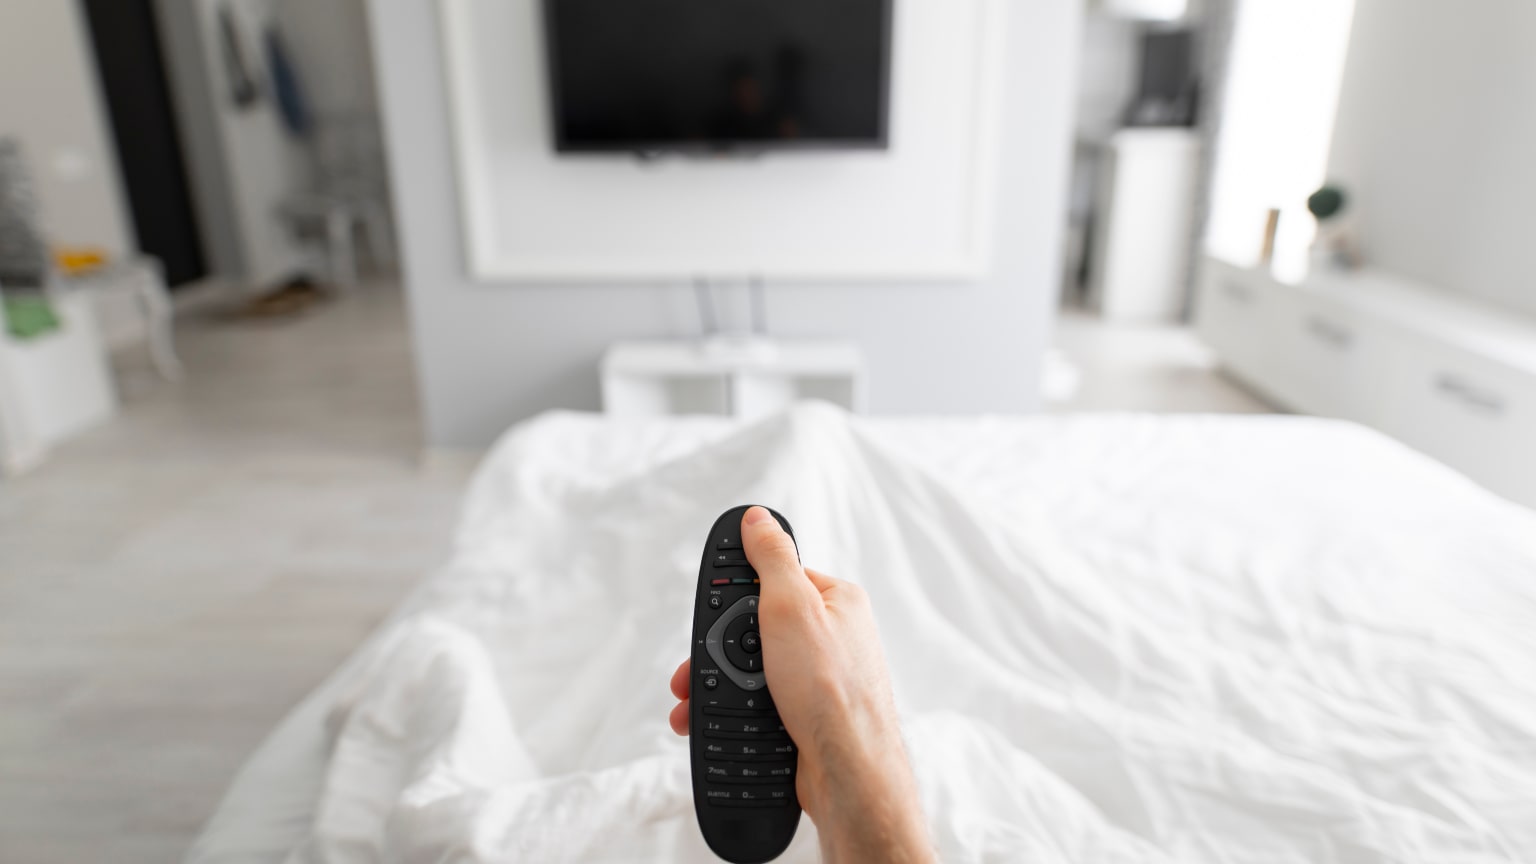 Tv in camera: immagine di televisore e persona a letto con telecomando